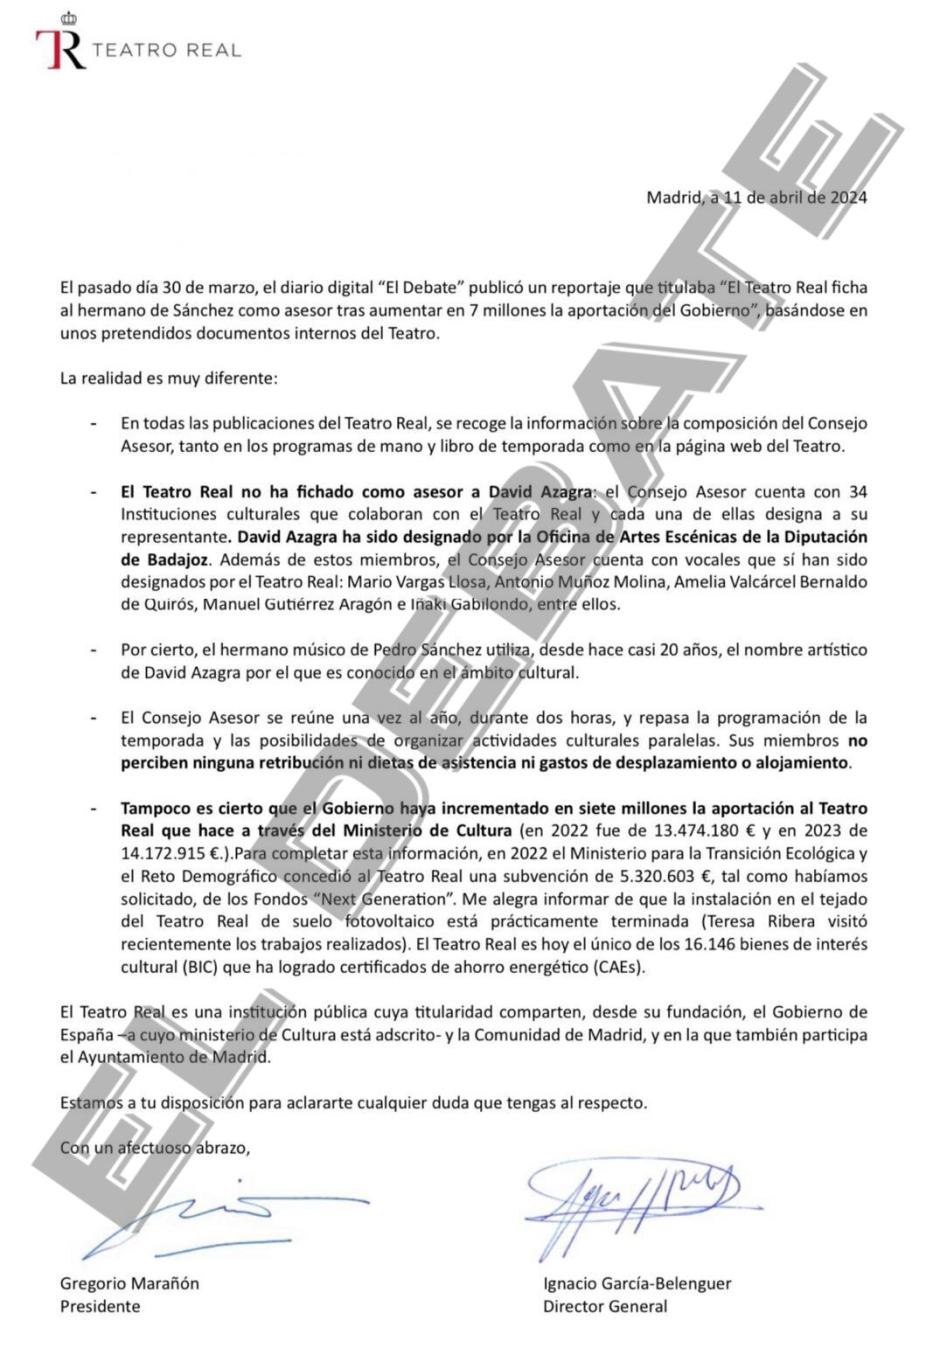 Carta de Gregorio Marañón a los directivos del Teatro Real